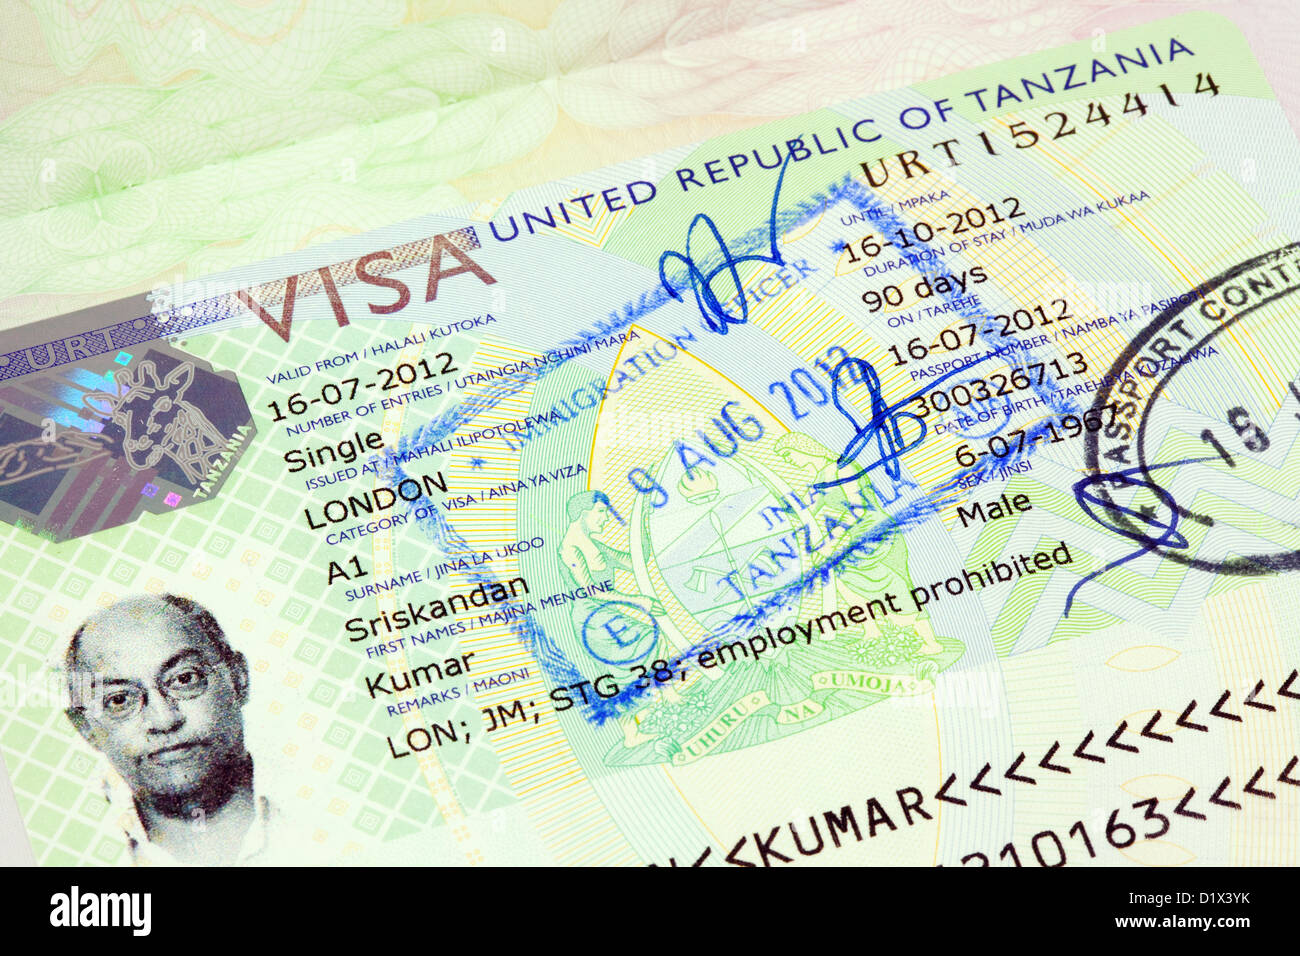 Tanzania visa Banque de photographies et d'images à haute résolution - Alamy